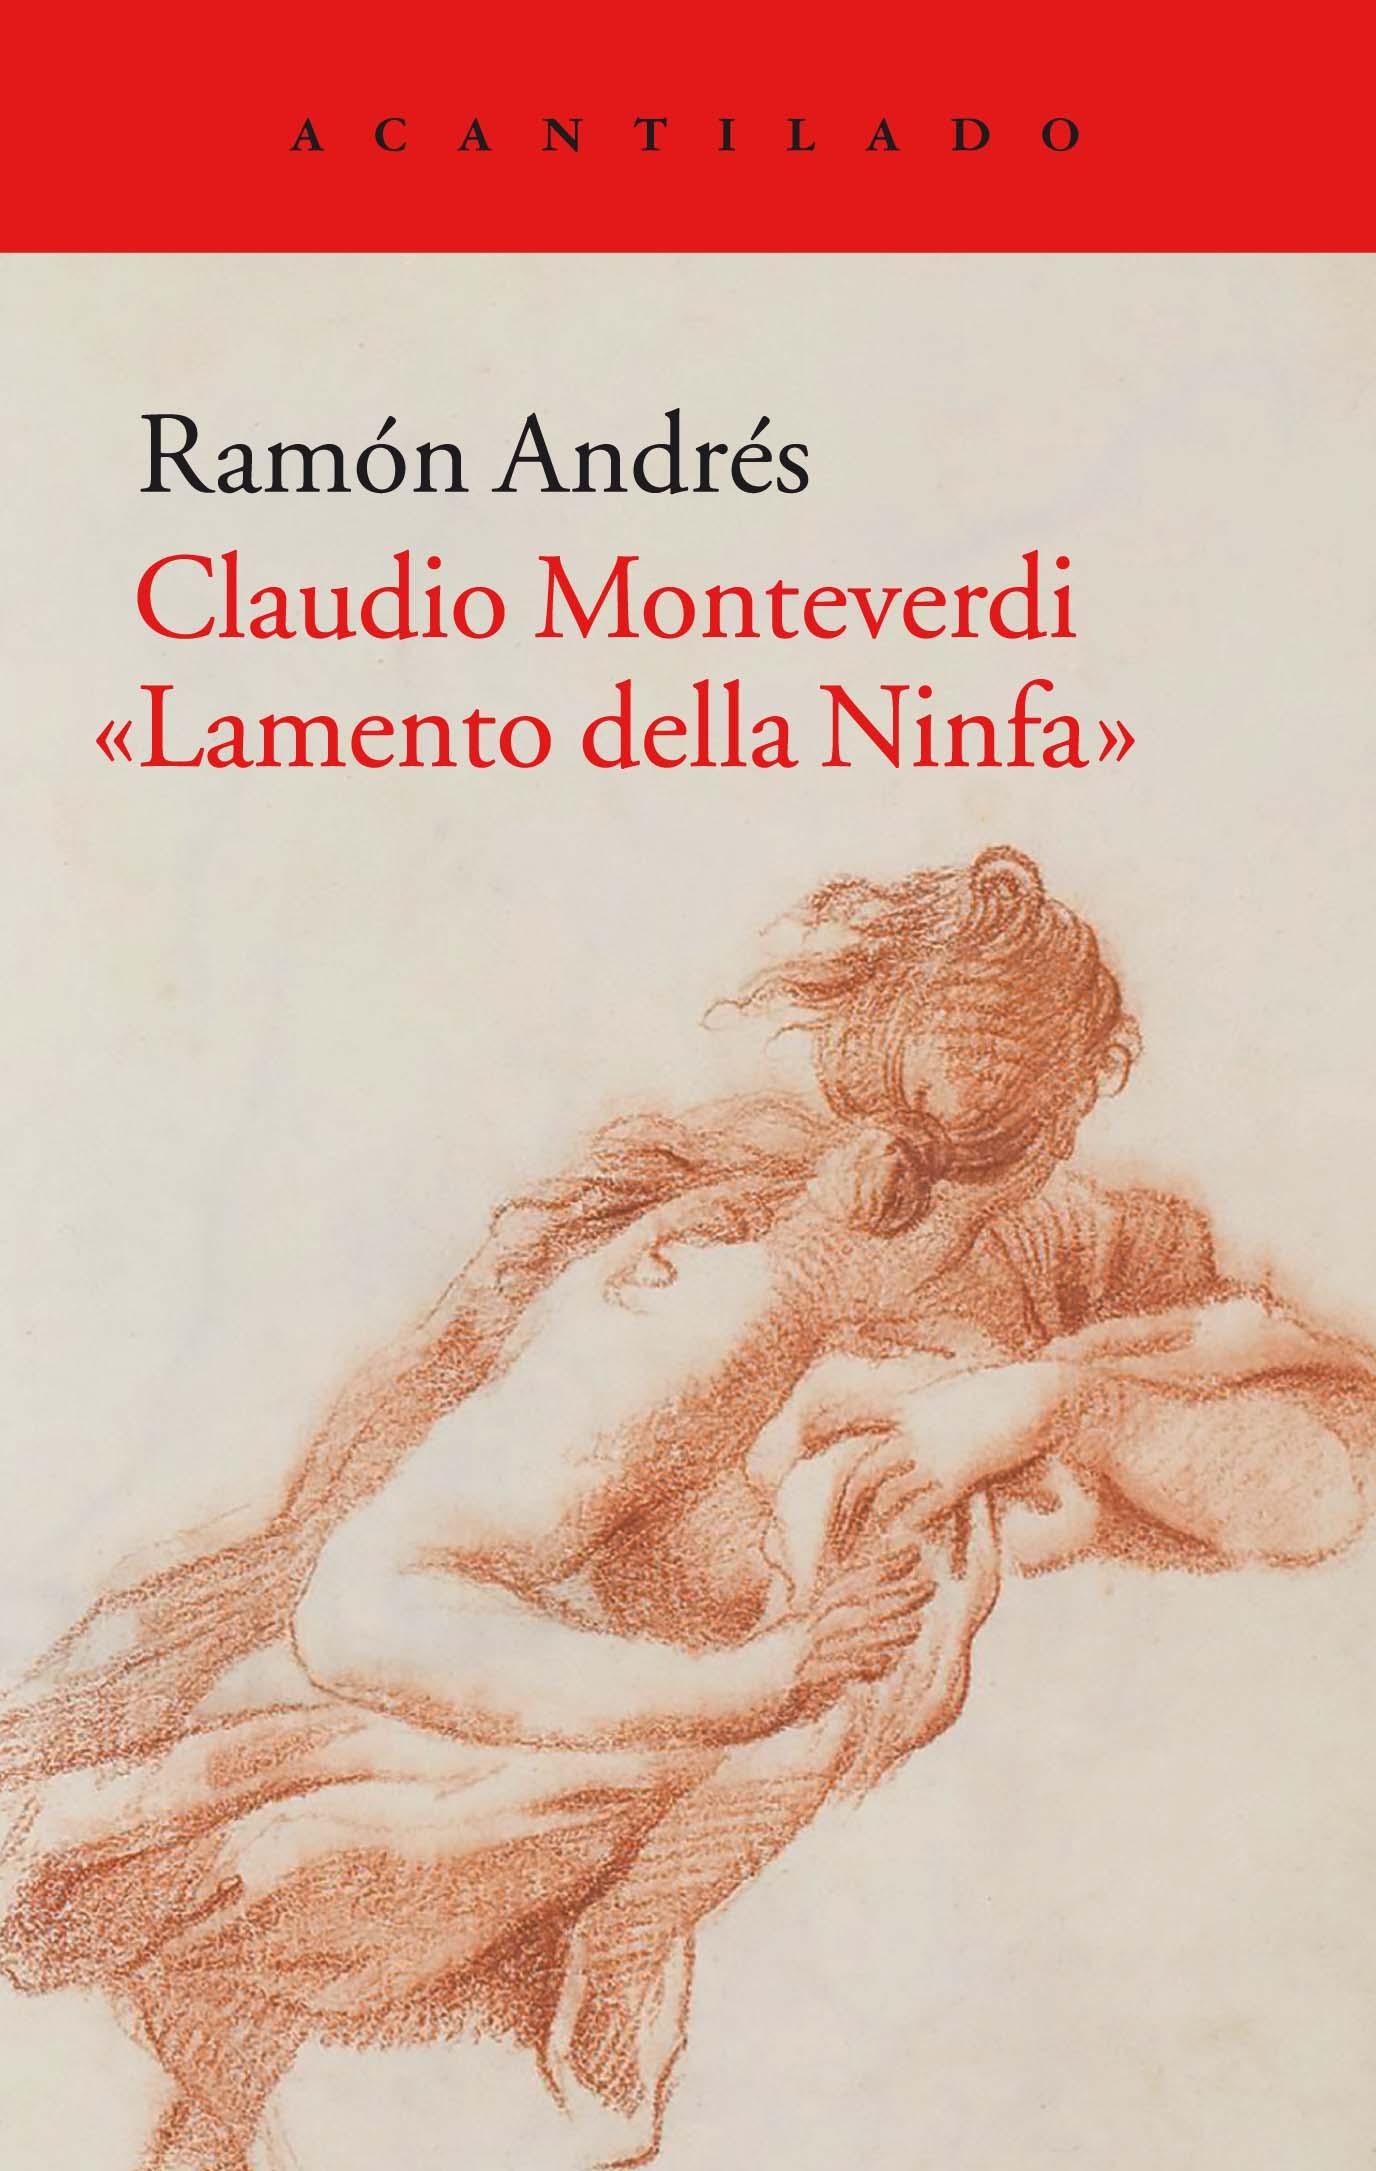 Claudio Monteverdi "Lamento della Ninfa"